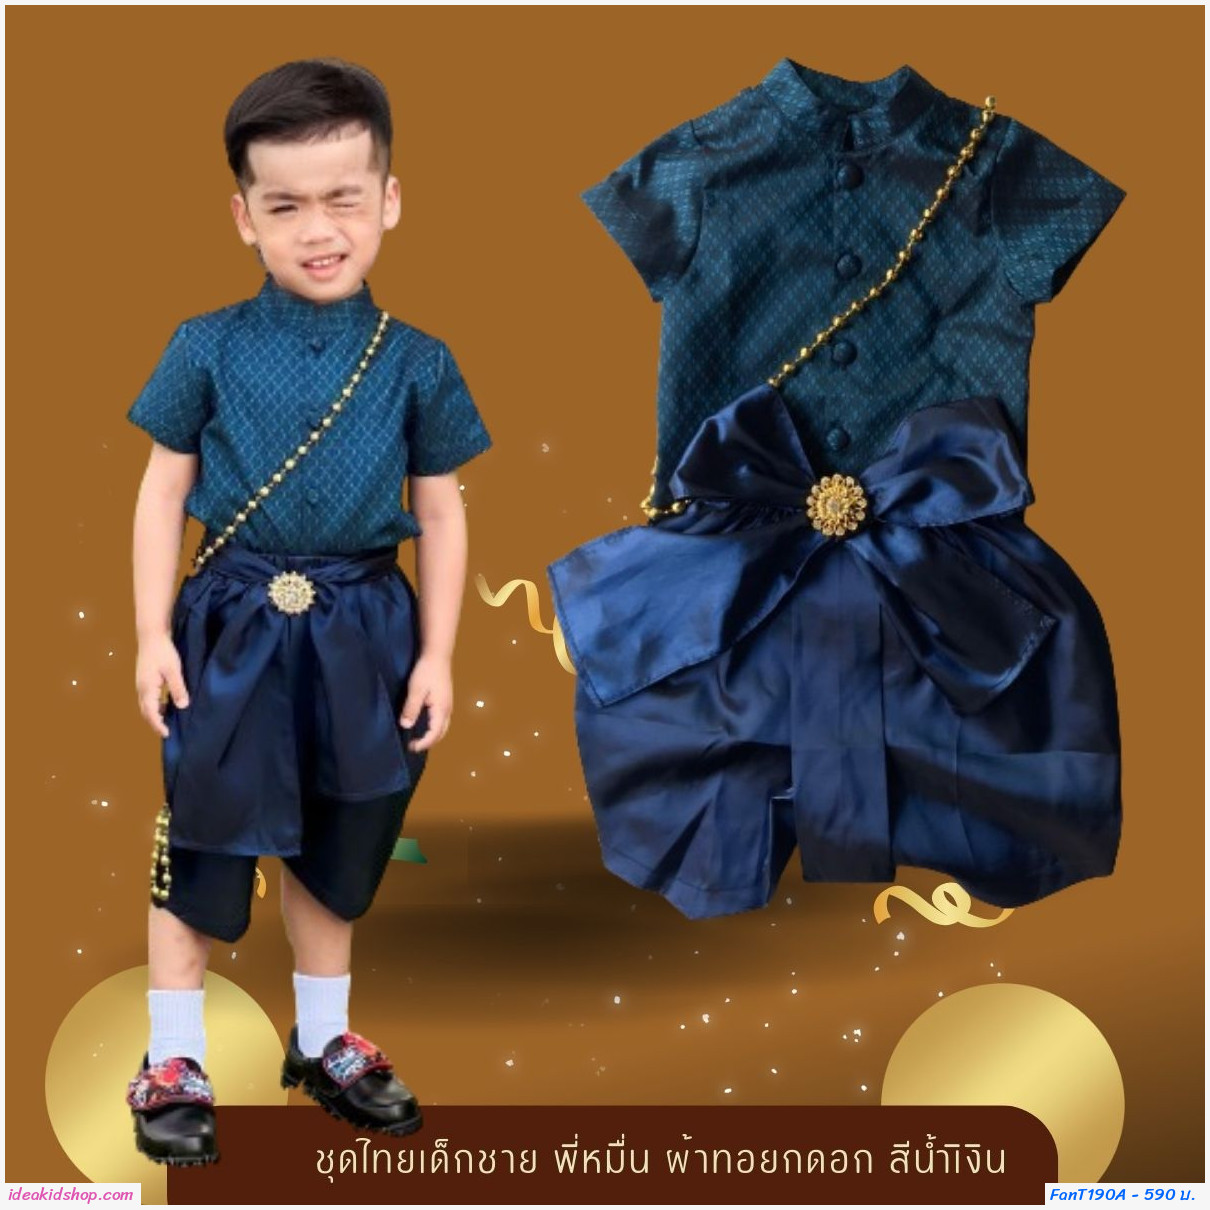 ชุดไทยเด็กชาย พี่หมื่น ผ้าทอยกดอก สีน้ำเงิน